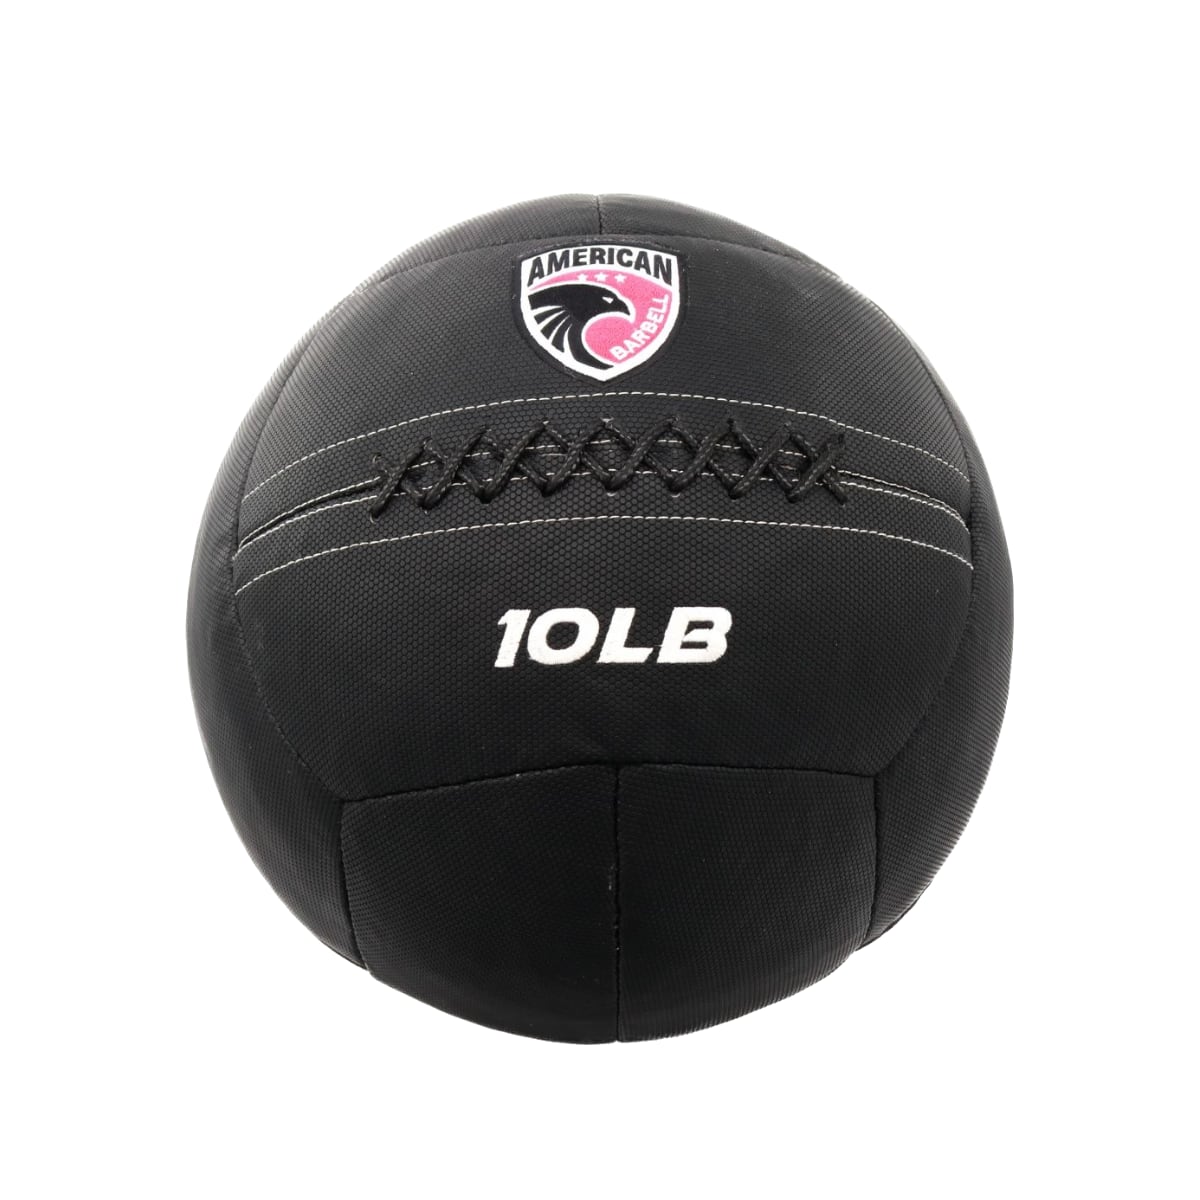 Brug American barbell AmericanBarbell Premium Wall Ball 10 lb til en forbedret oplevelse